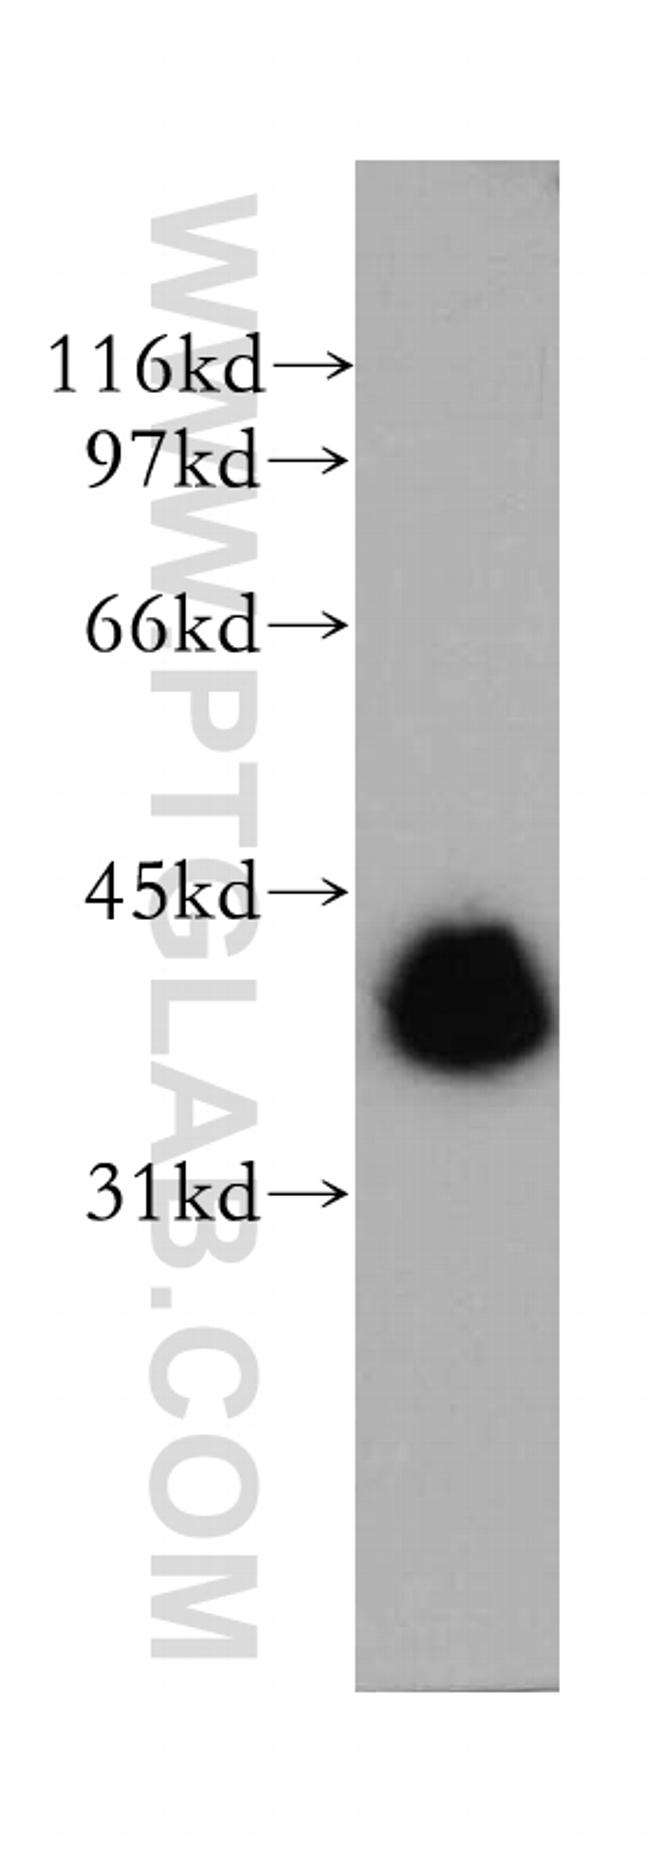 TMOD3 Antibody in Western Blot (WB)